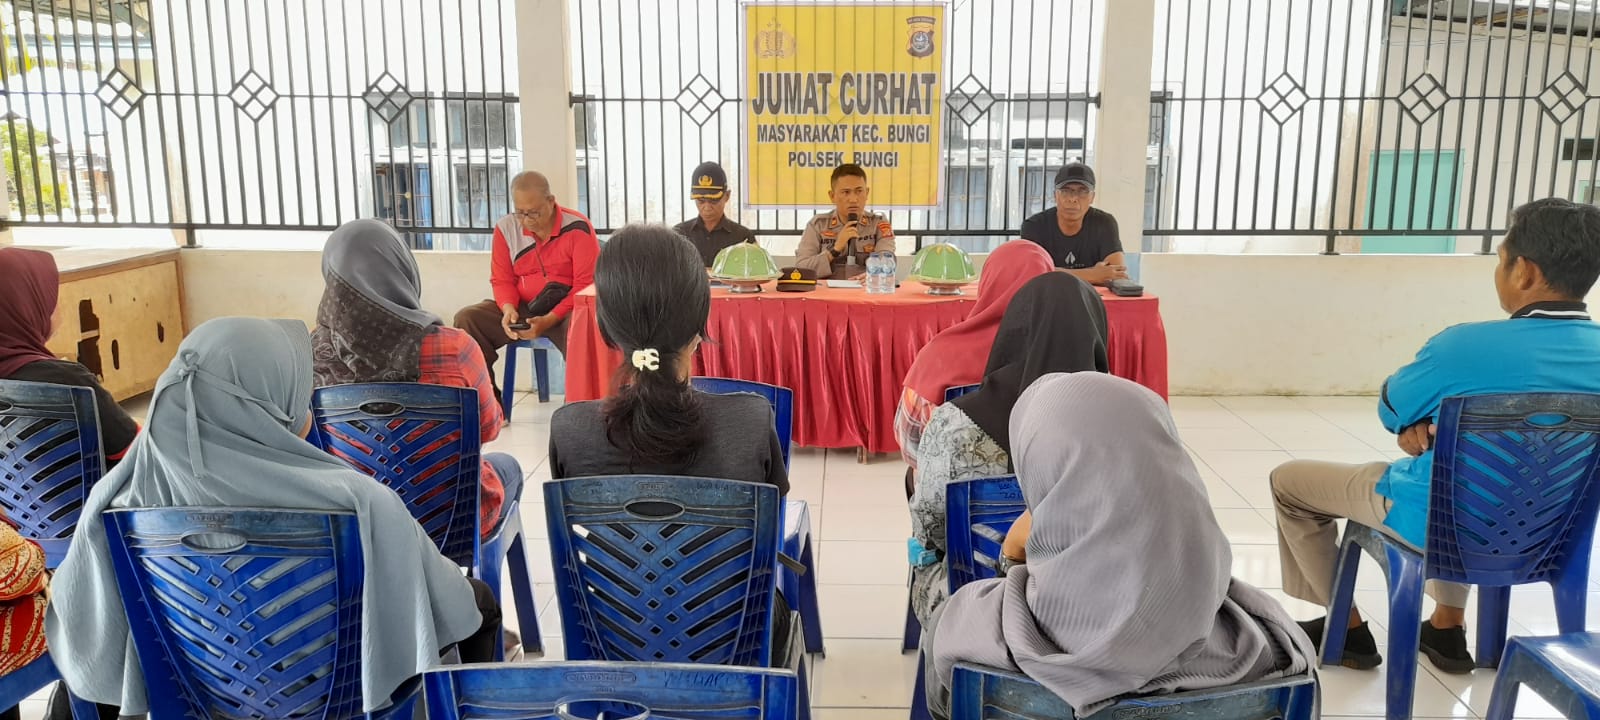 Kapolsek Bungi Iptu Bustam melakukan koordinasi Jumat Curhat kepada tokoh masyarakat di Kecamatan Bungi, Kota Baubau. (Foto Suari)